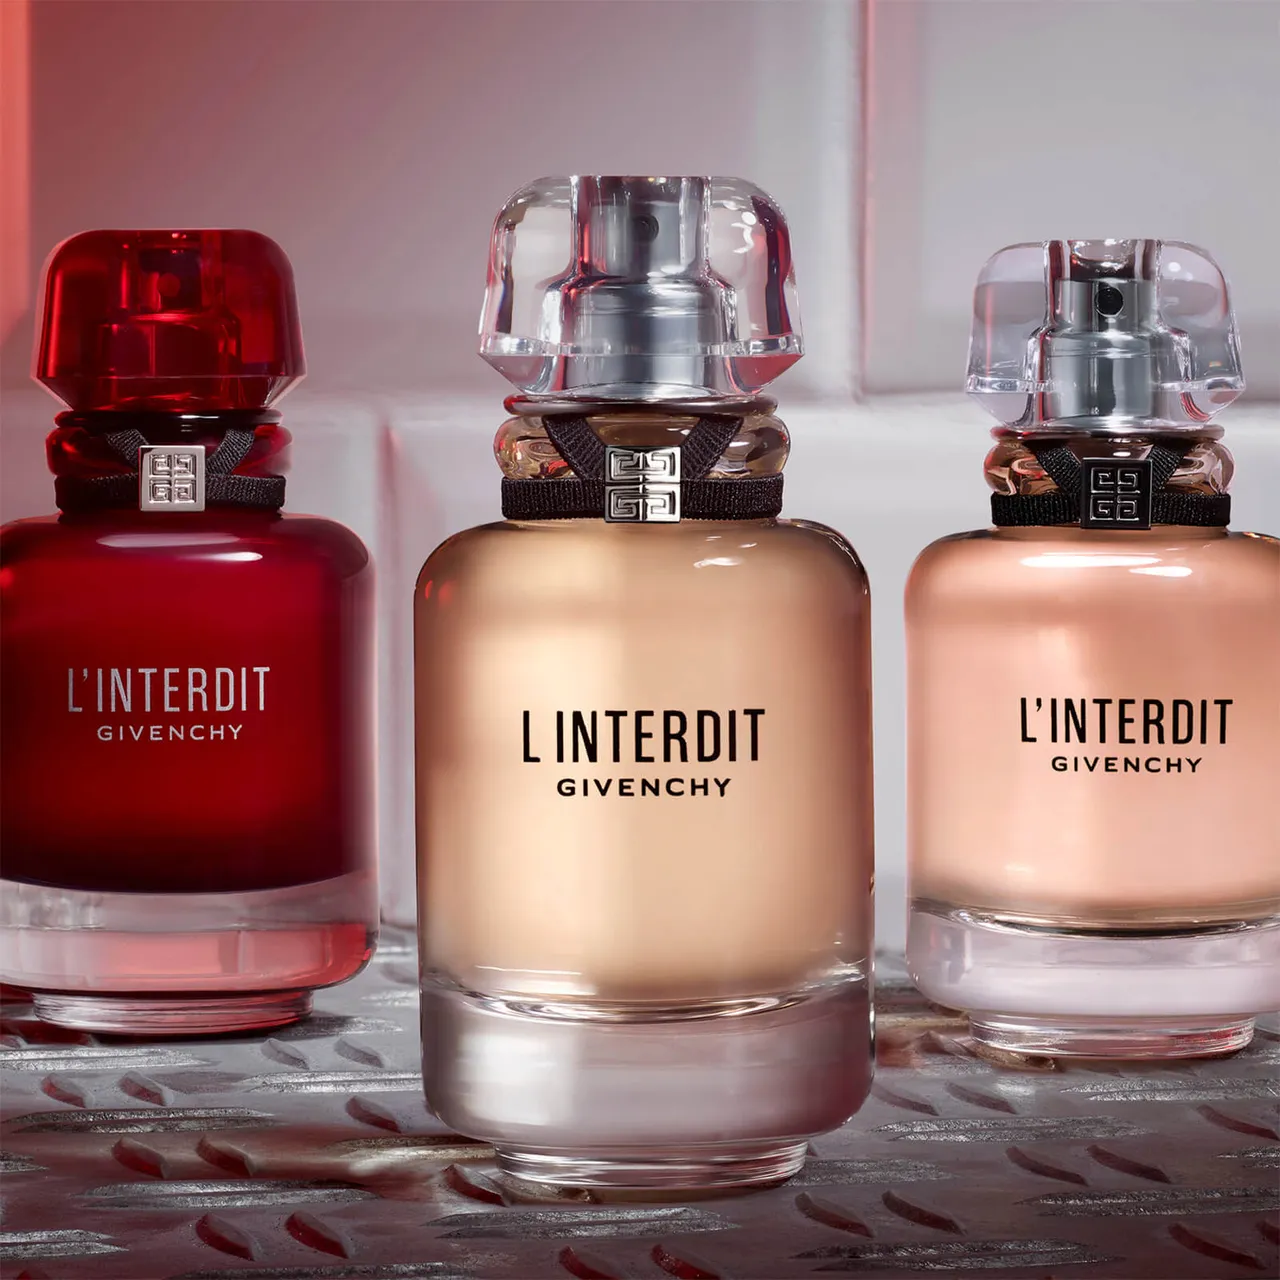 Givenchy L'Interdit Eau de Parfum Rouge 80ml